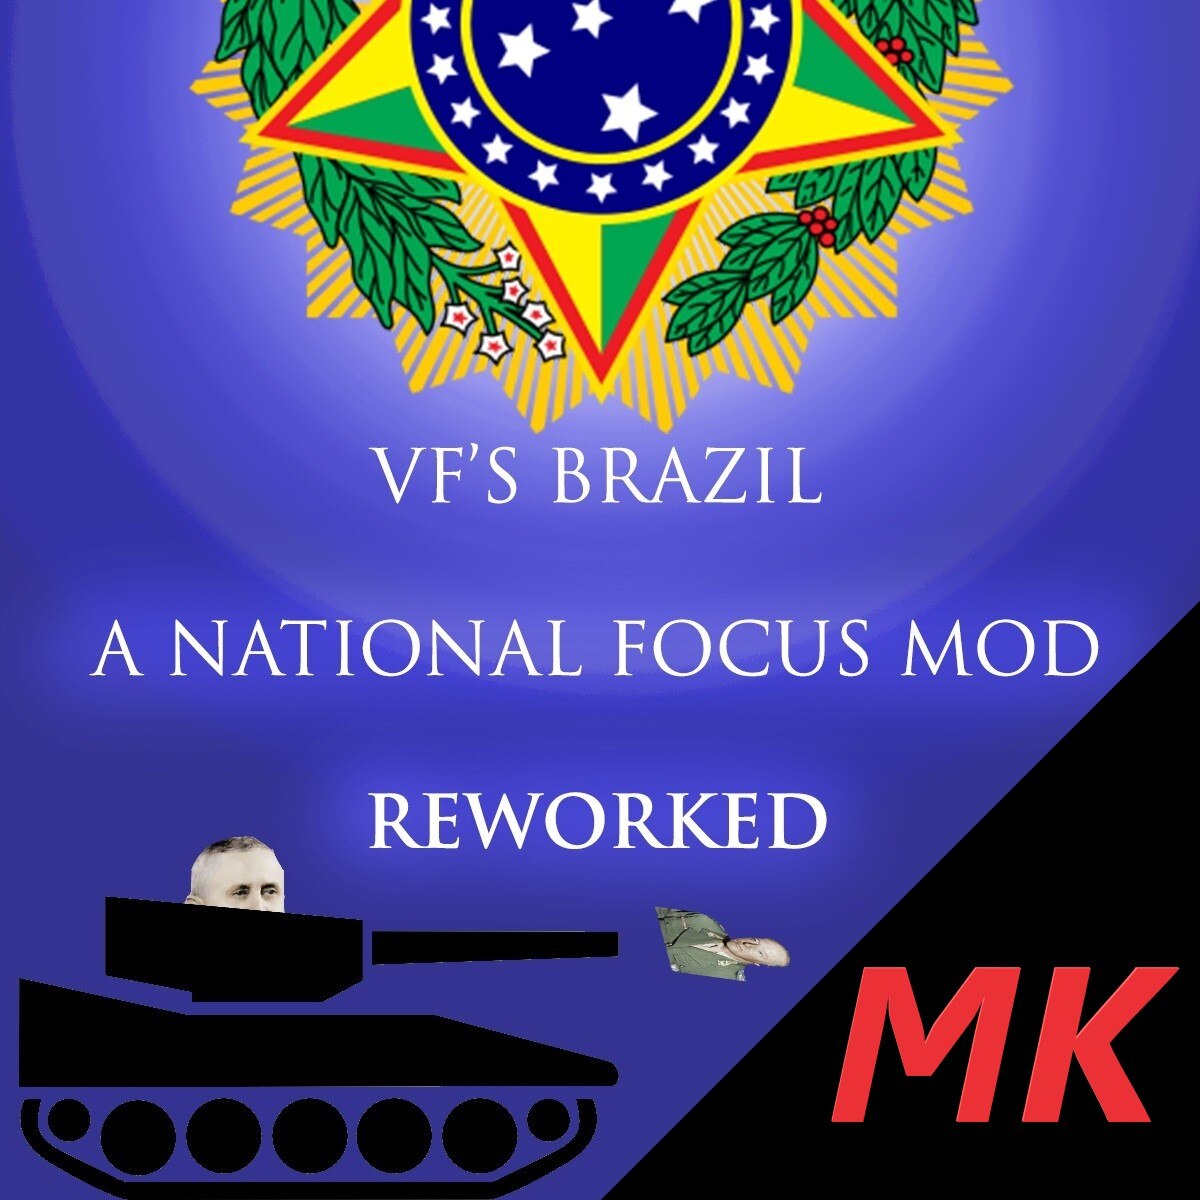 Brasil Mods